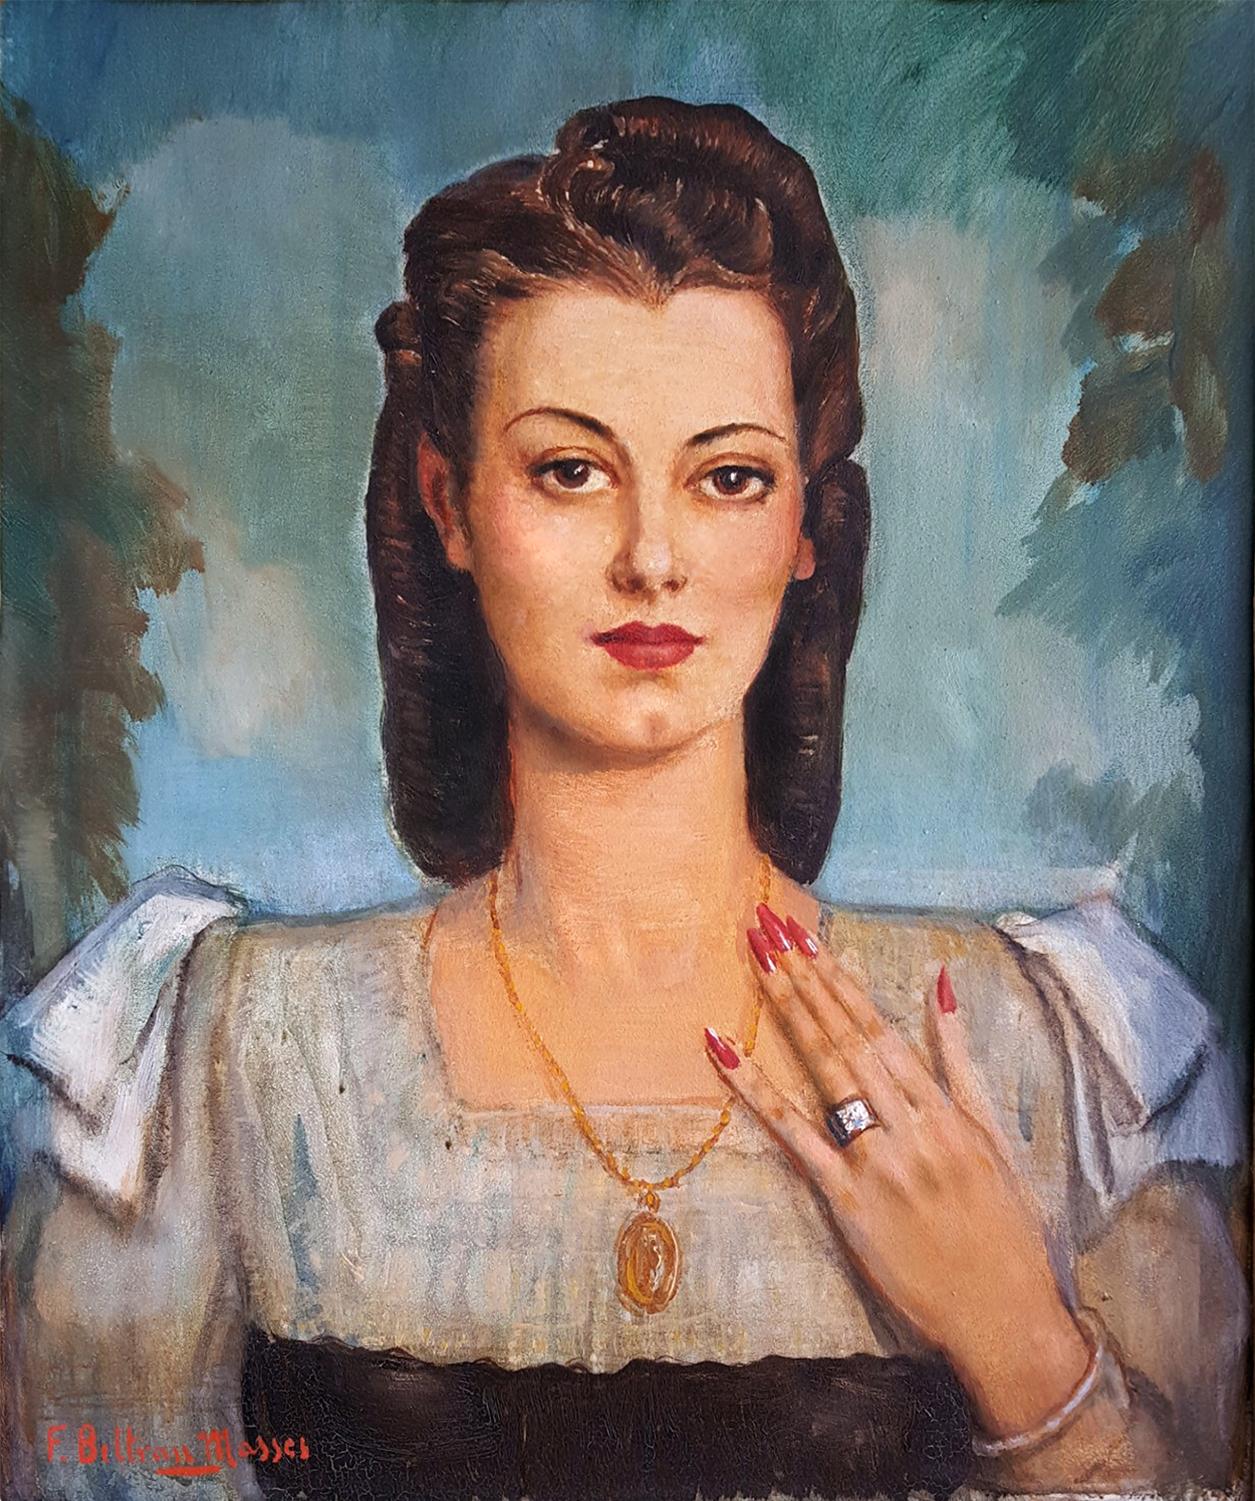 Lateinische Frau mit Juwelen, lateinische Frau  Art Deco